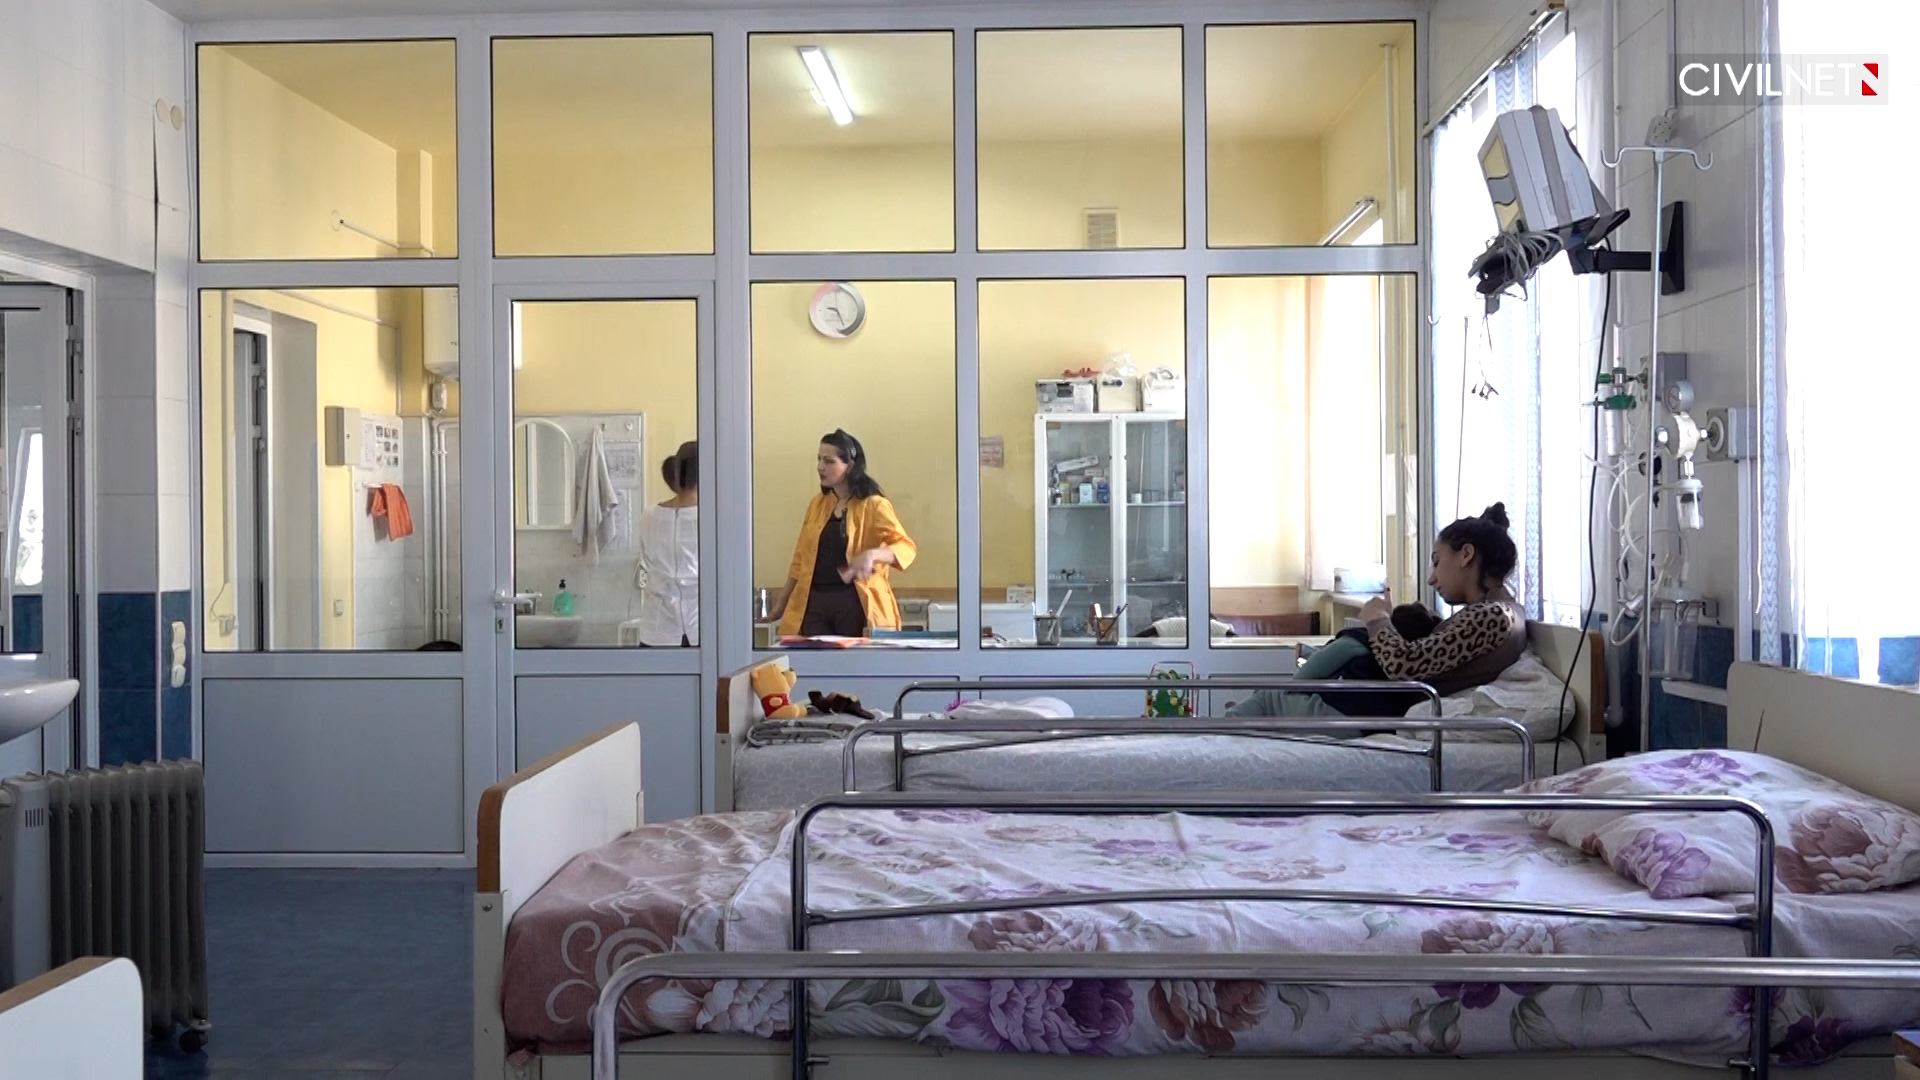 Ստեփանակերտի հիվանդանոց․ բուժառու մանուկներն առանց ջեռուցման